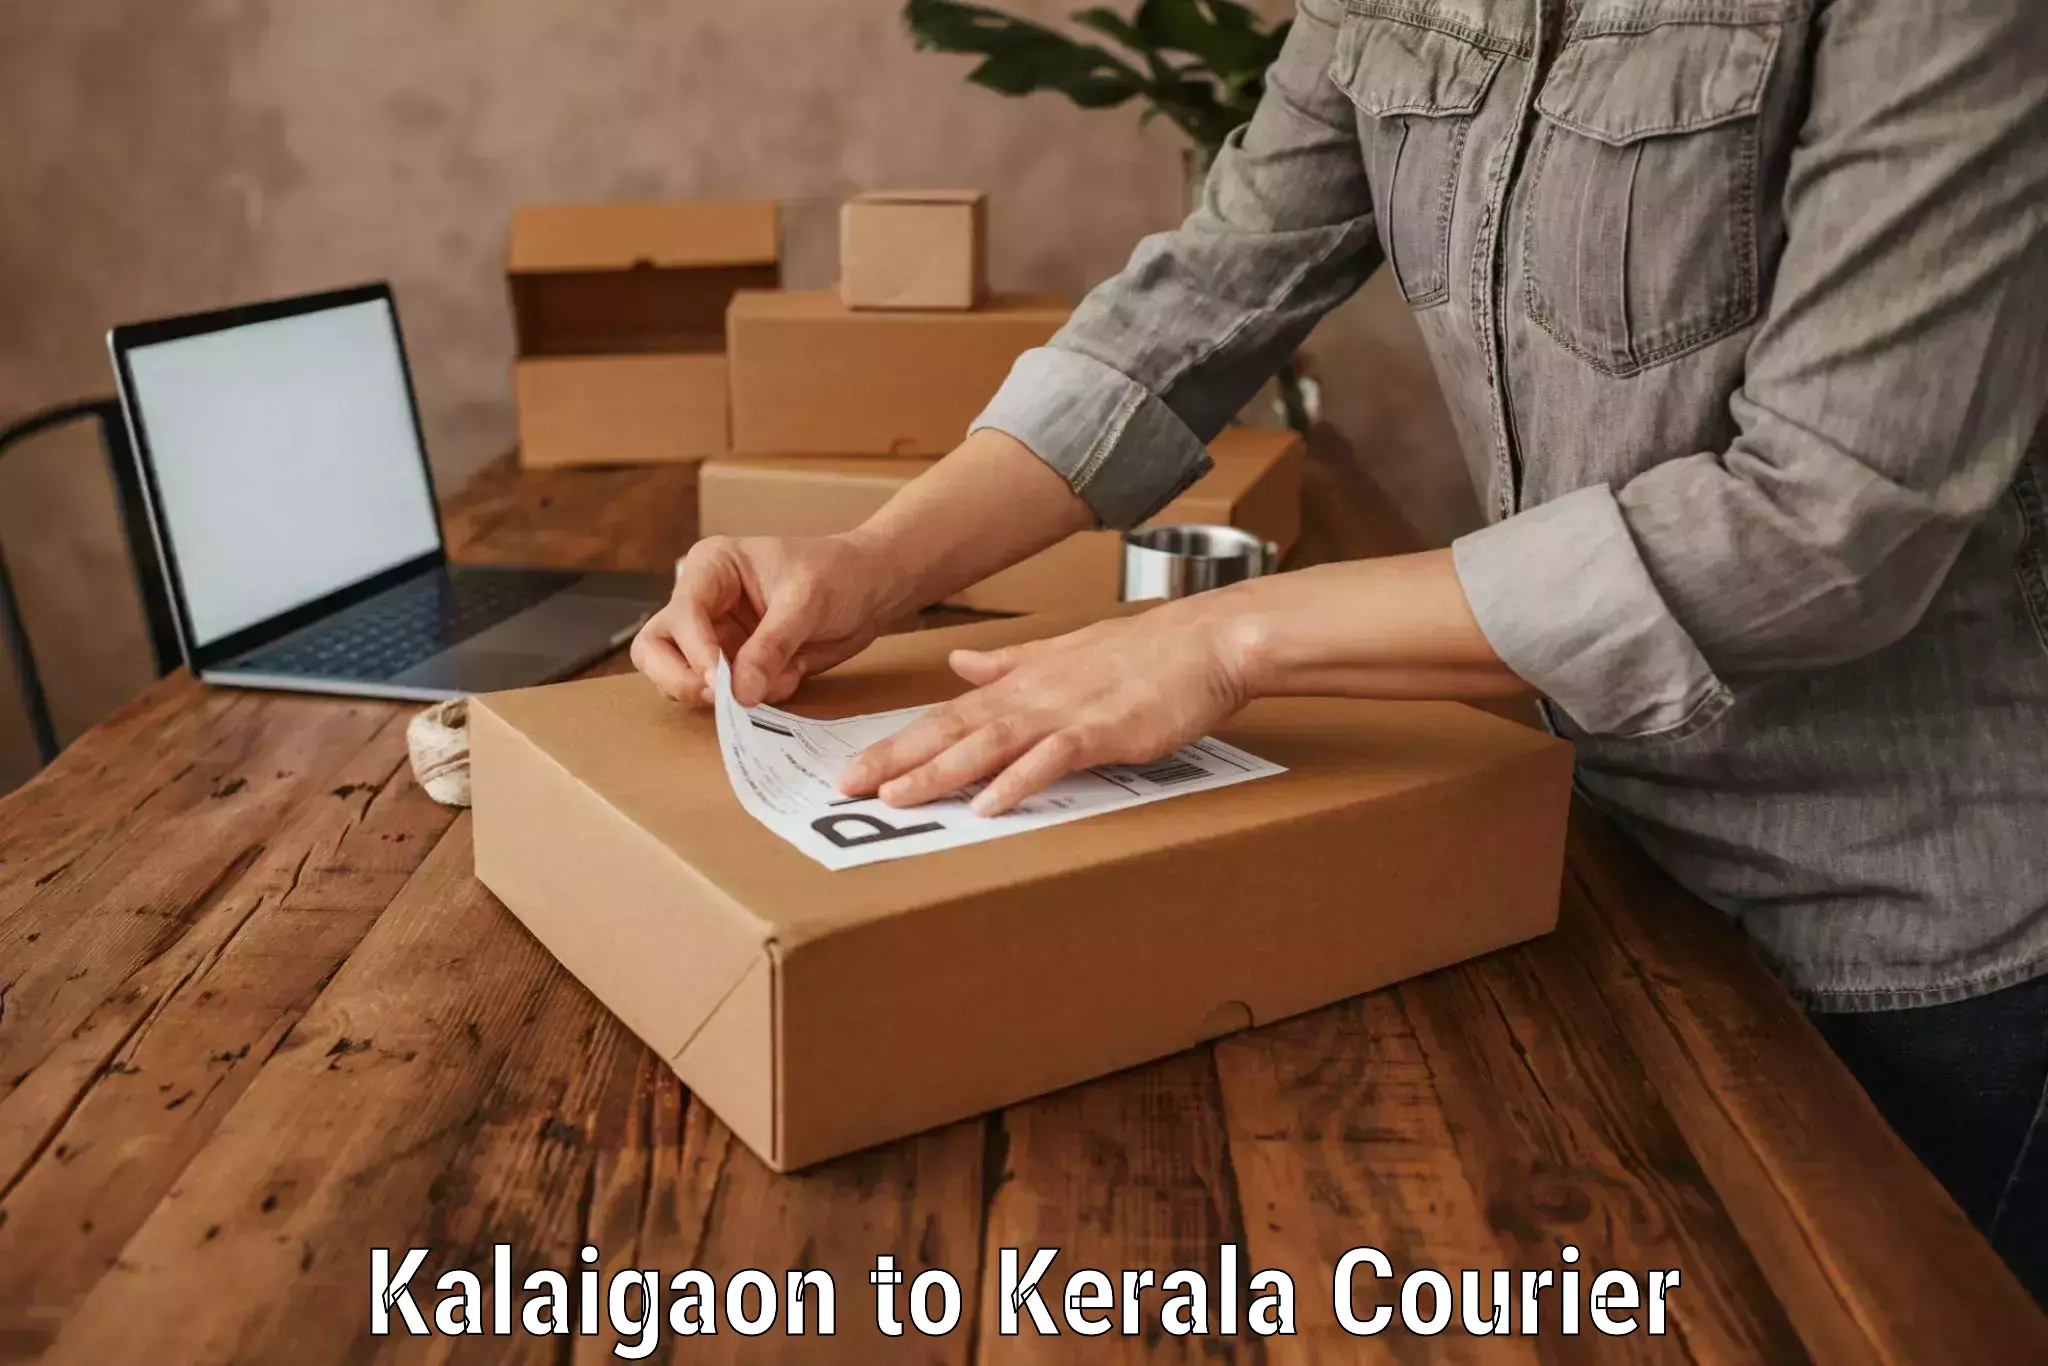 Luggage shipment processing Kalaigaon to Kottayam